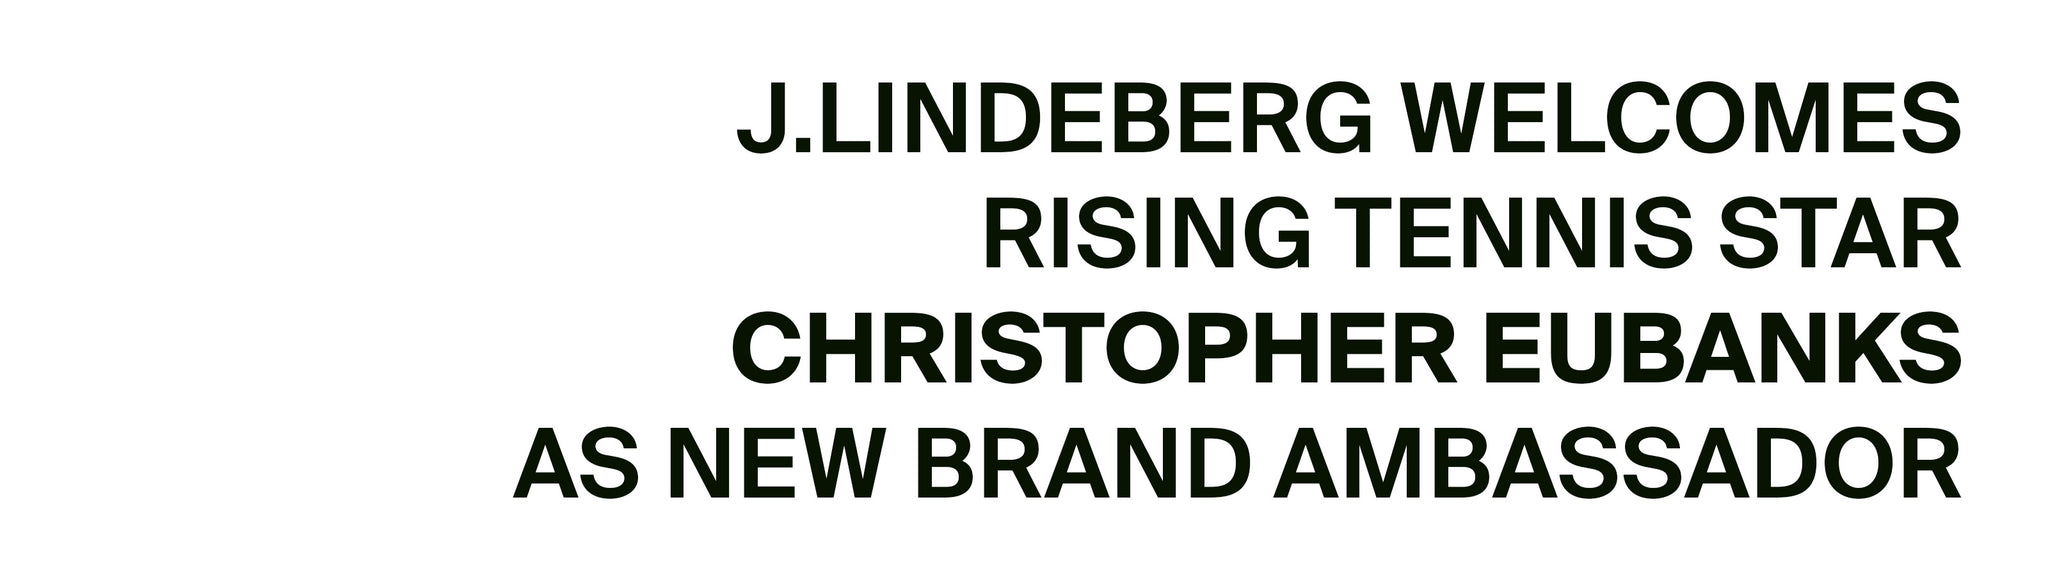 JLINDEBERG WELCOMES CHRIS EUBANKS